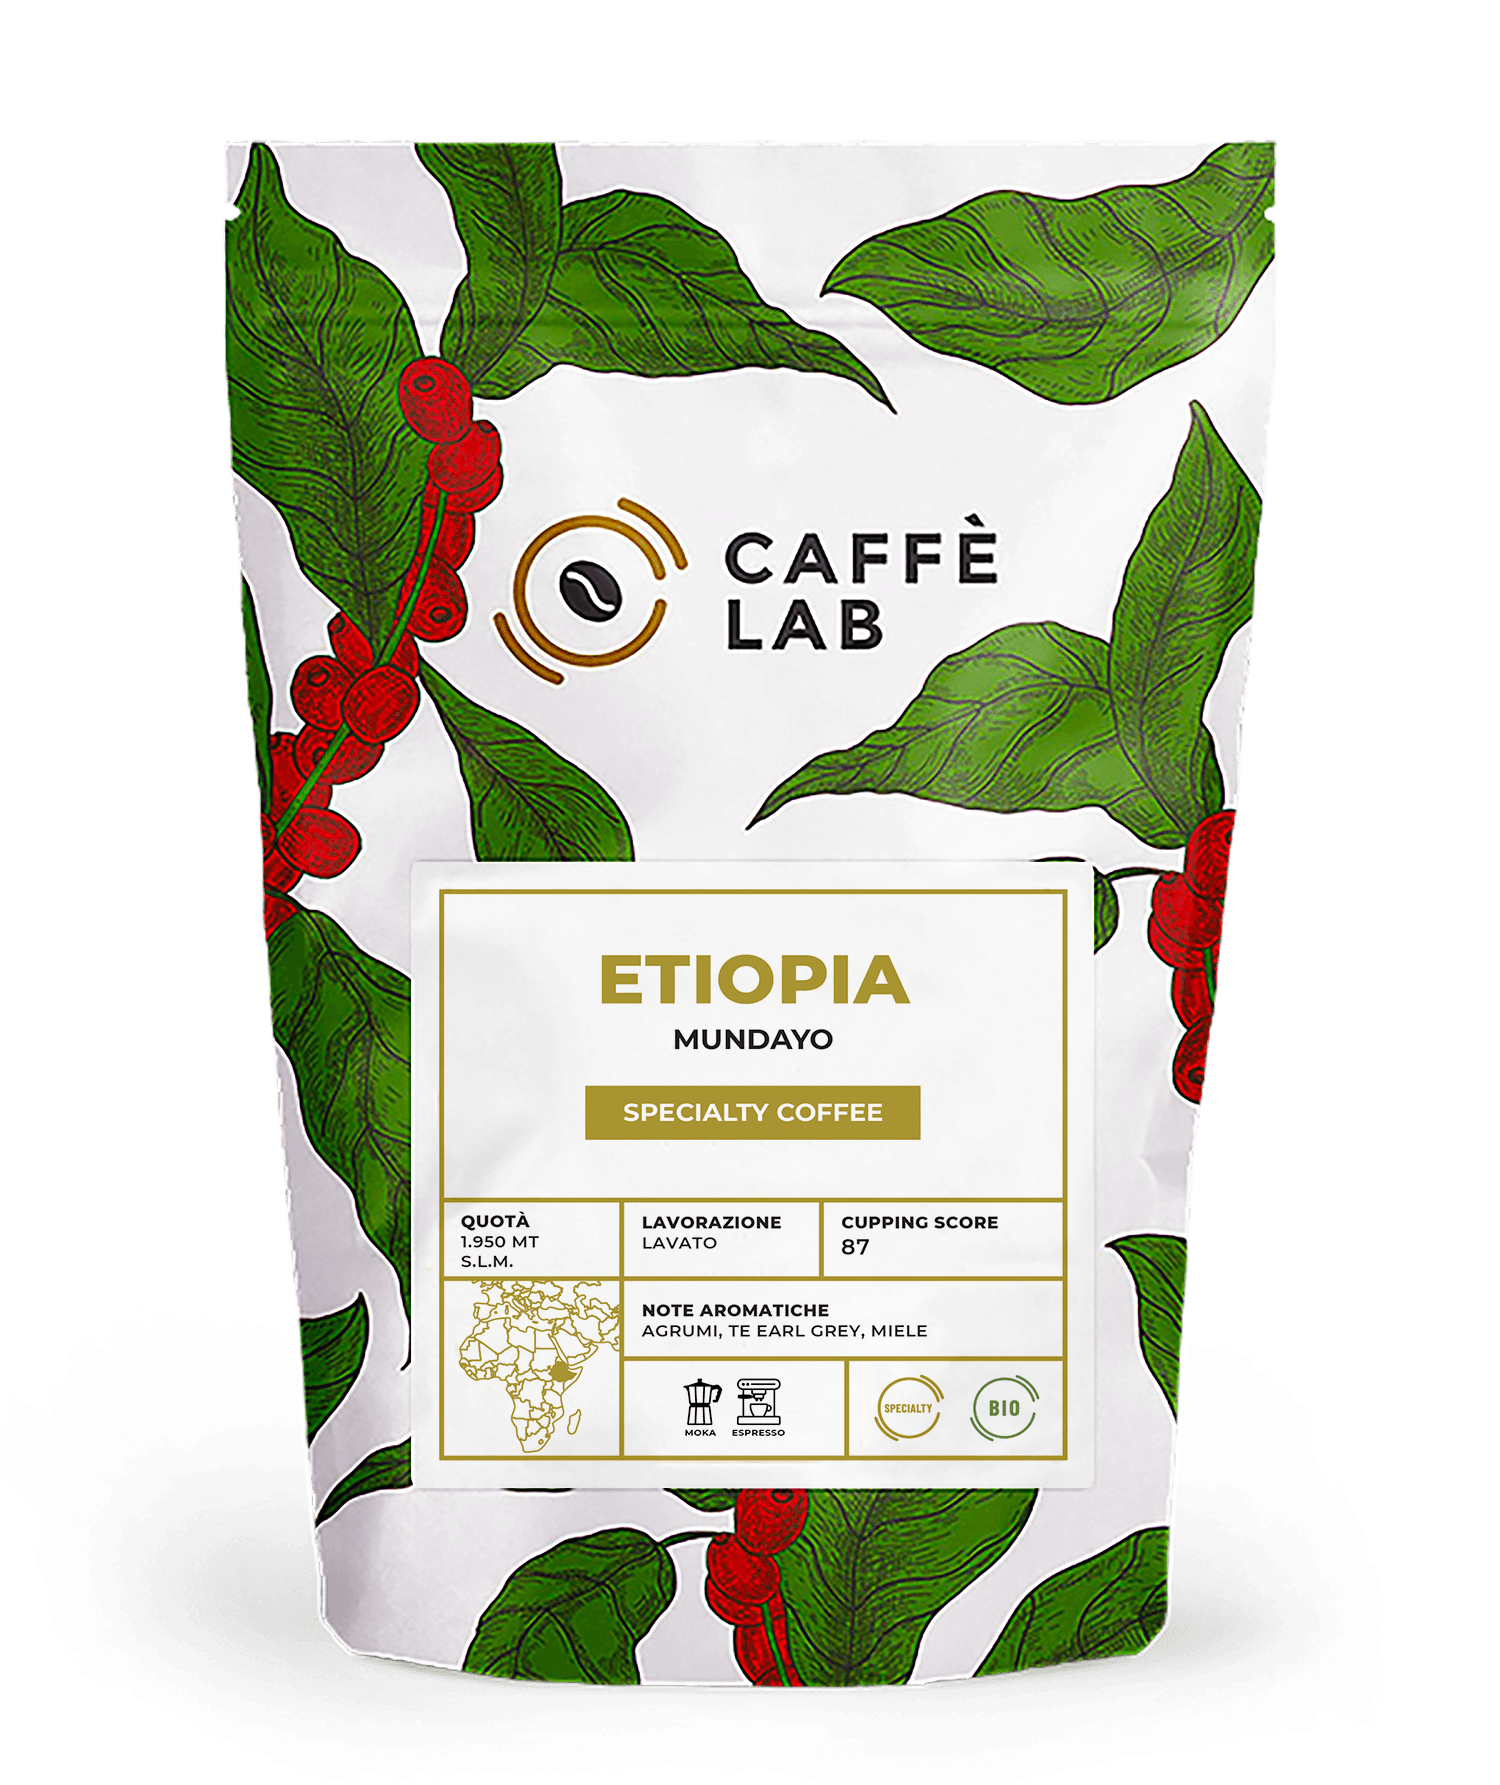 Bio Coffee, Organic Coffee, Biologic Coffee, Fair Trade